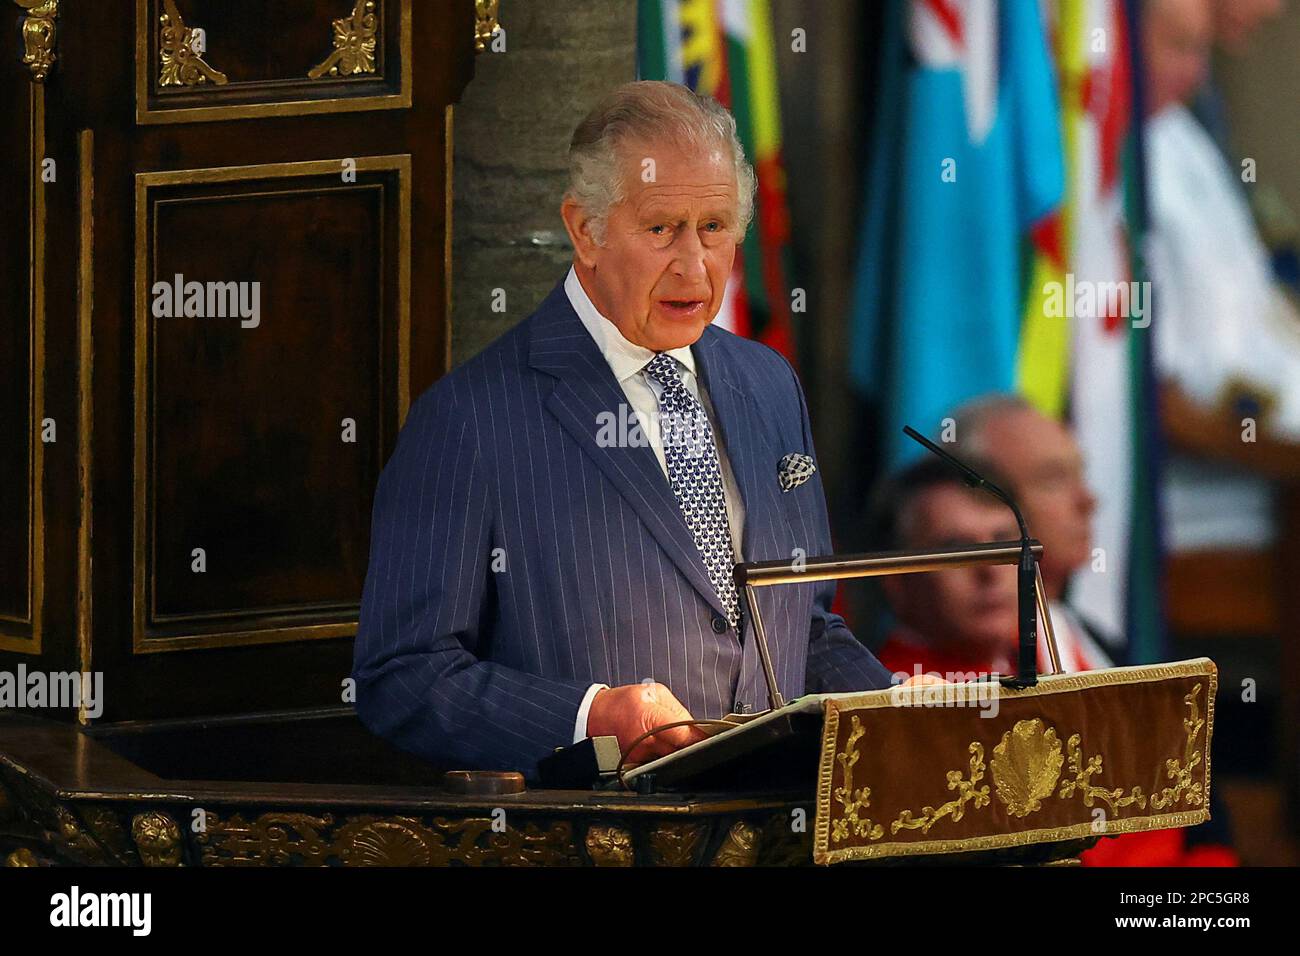 Der britische König Charles überbringt seine Botschaft zum Commonwealth Day während eines Gottesdienstes in Westminster Abbey in London, Großbritannien, am 13. März 2023. REUTERS/Hannah McKay/Pool Stockfoto